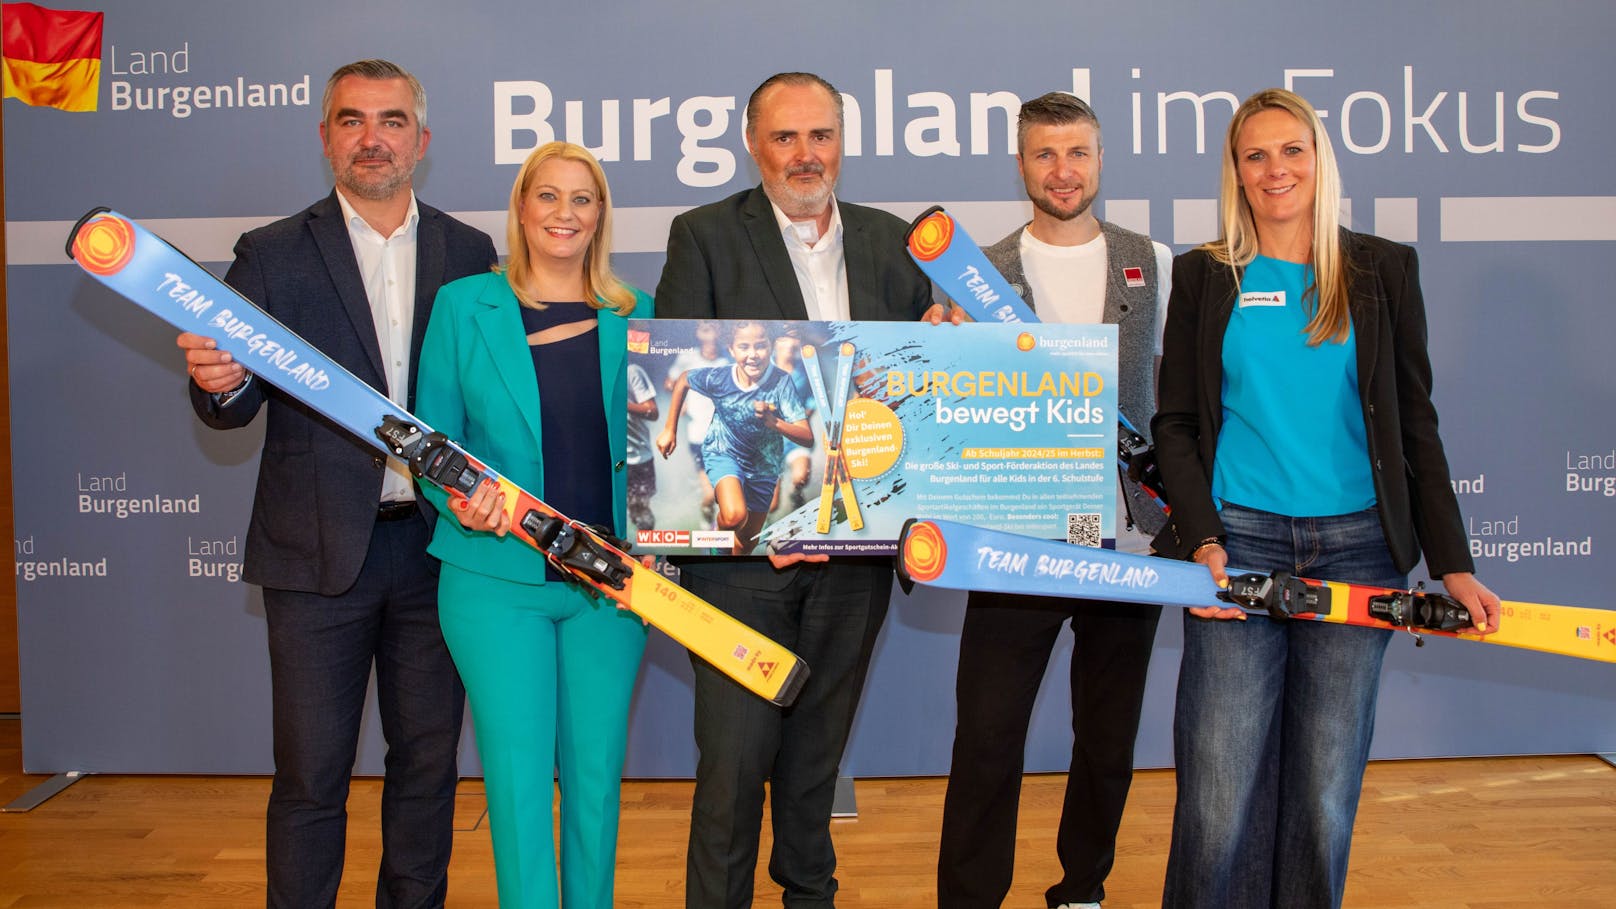 "Burgenland bewegt Kids" mit 200 Euro Sport-Gutschein